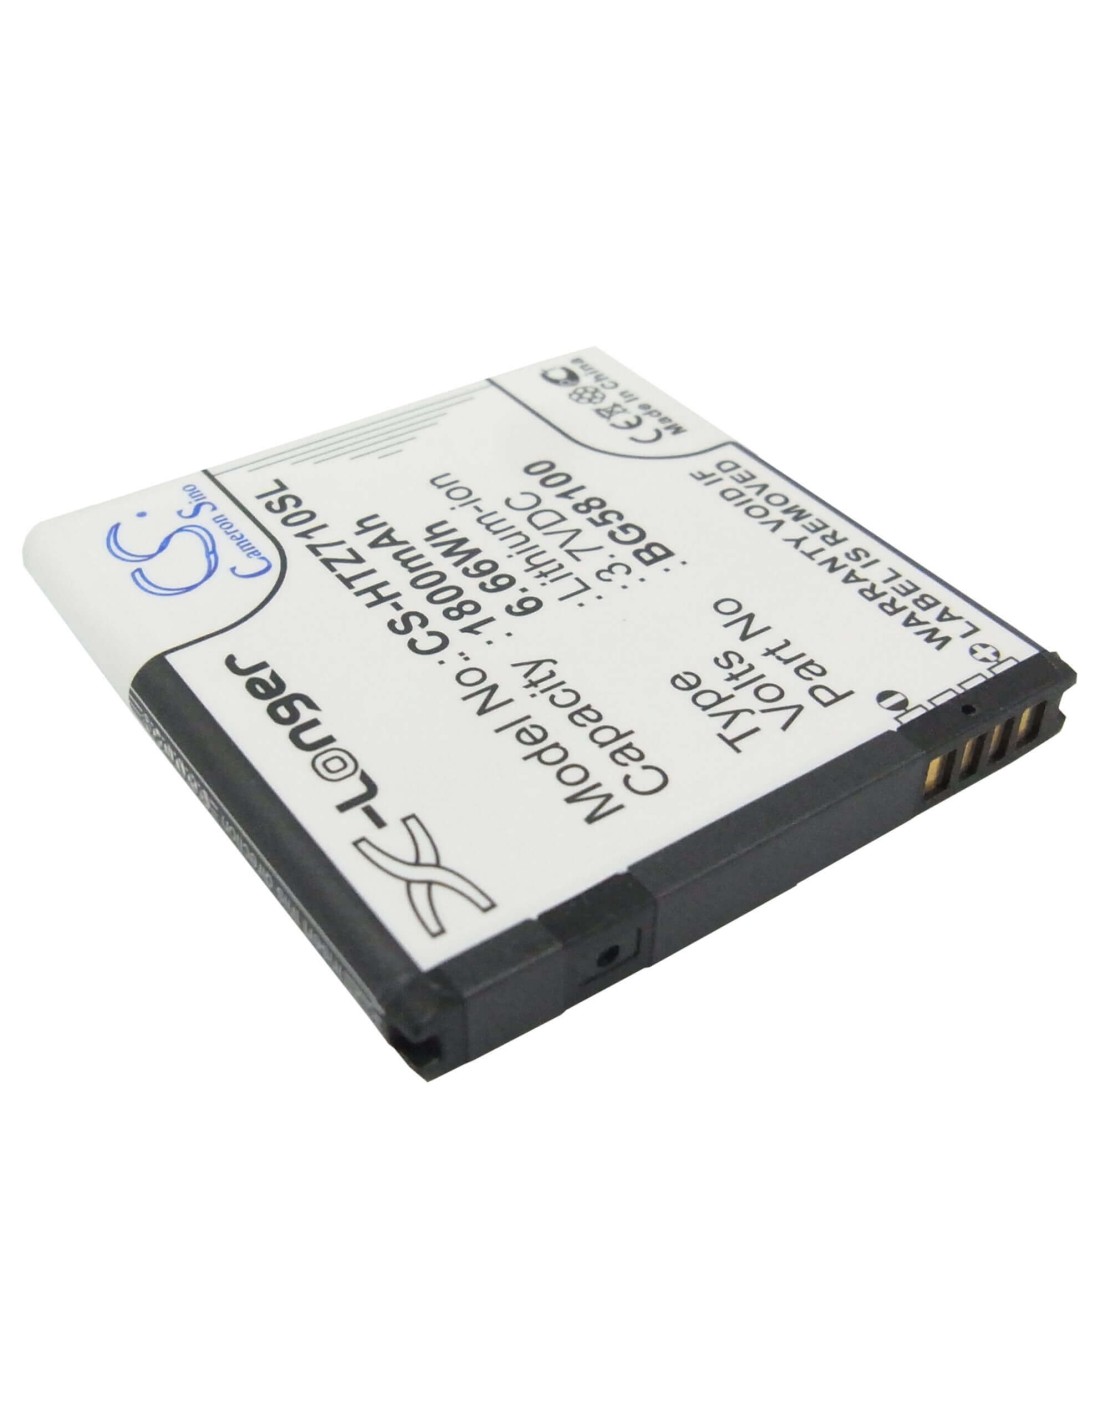 Battery for Google G14 3.7V, 1800mAh - 6.66Wh